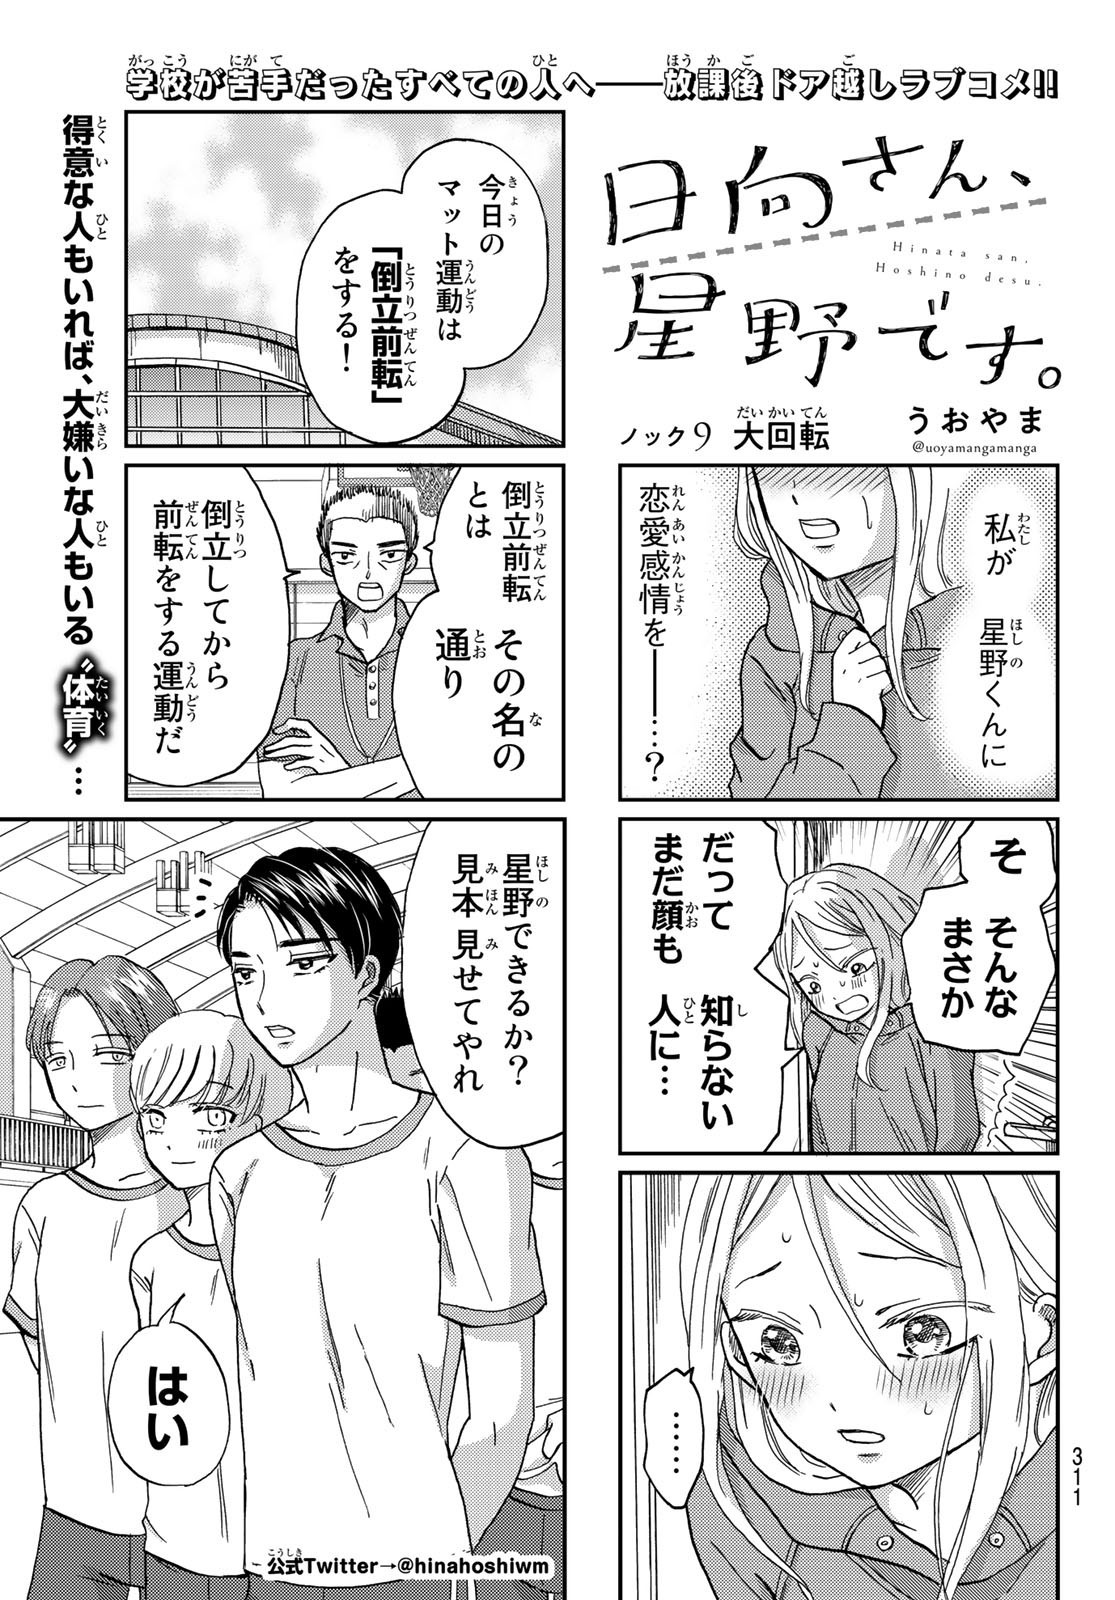 Hinata-san, Hoshino desu. - Chapter 009 - Page 1